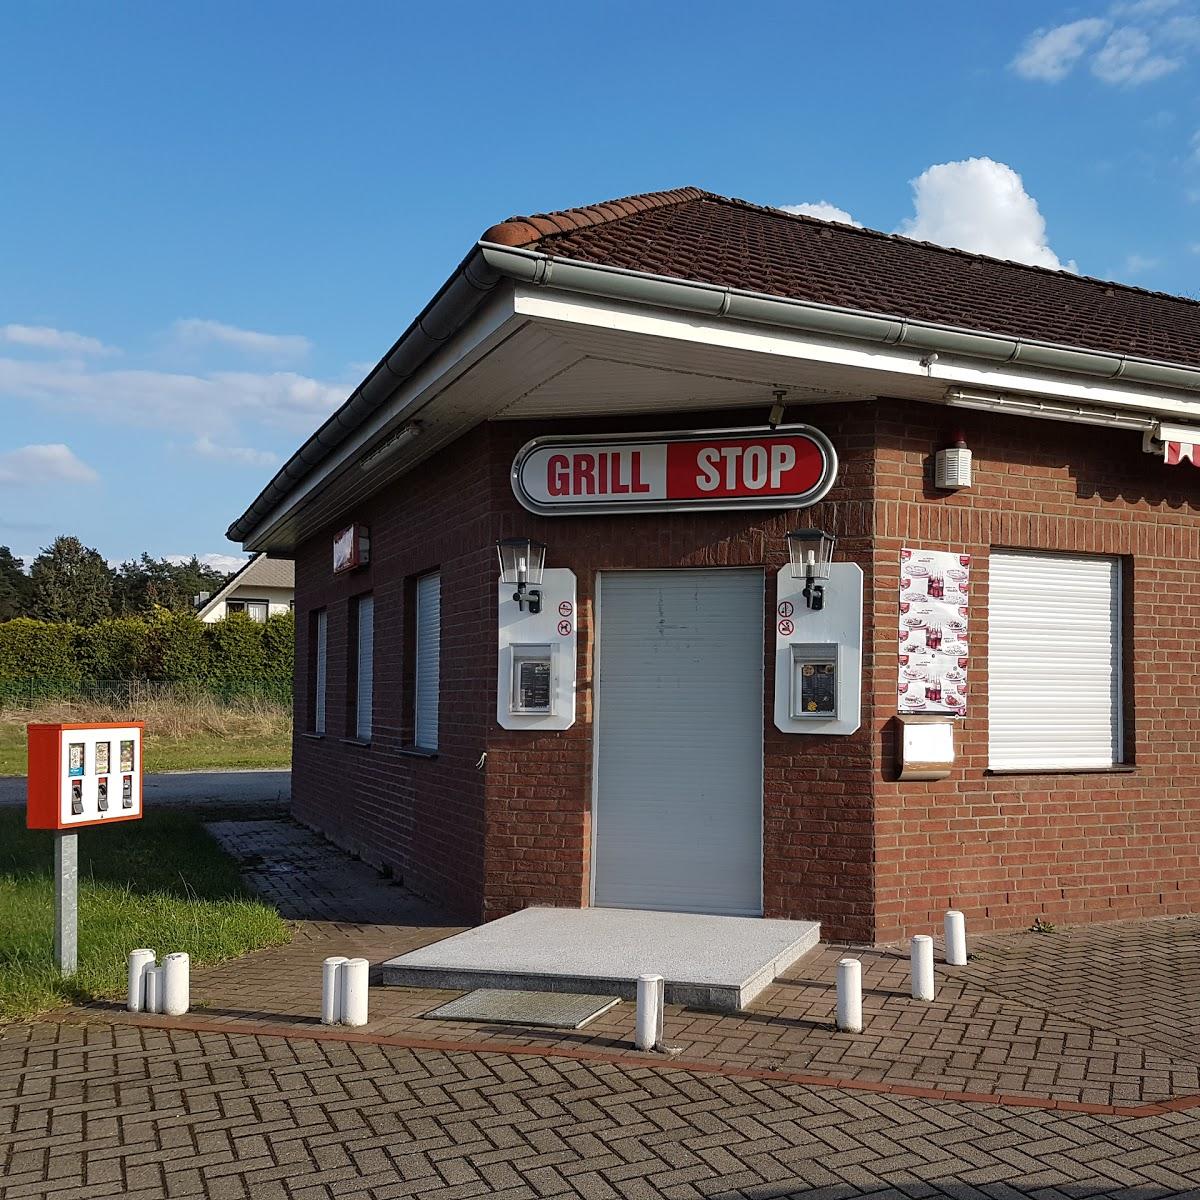 Restaurant "Grill Stop" in Bergen